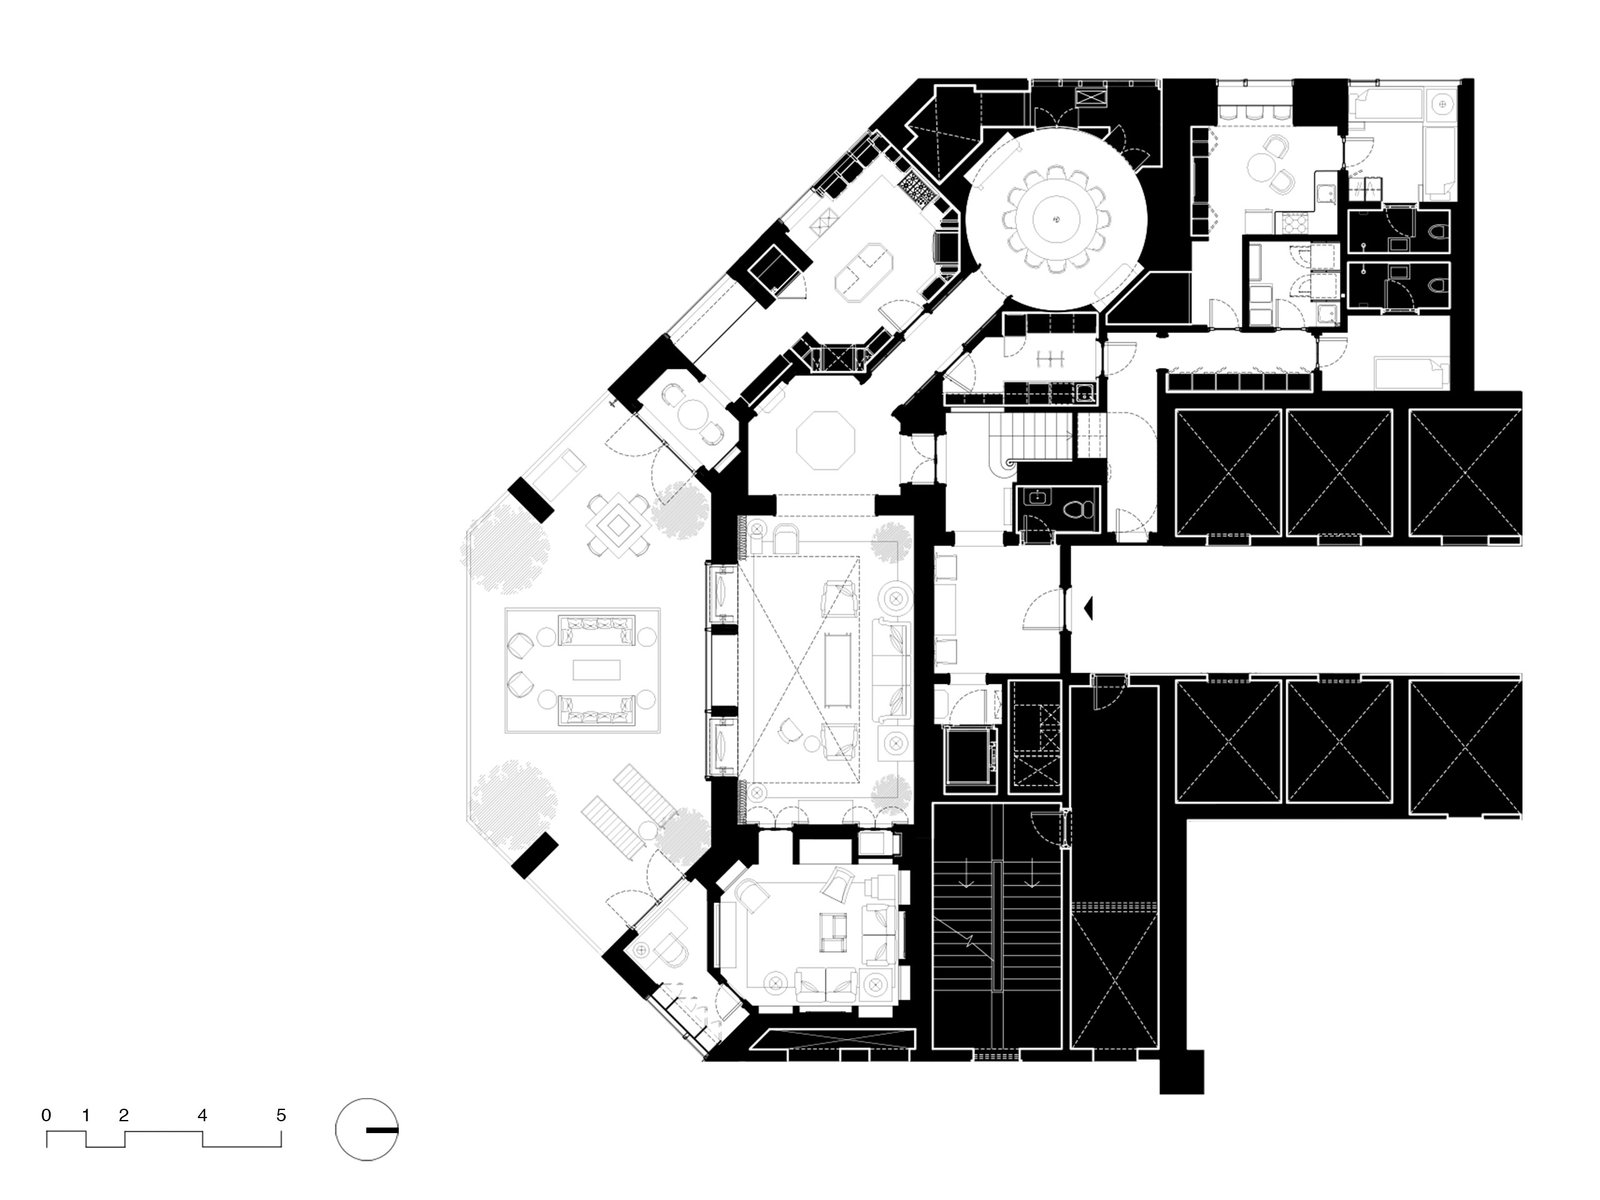 floor plan duplex apartment interior mumbai india